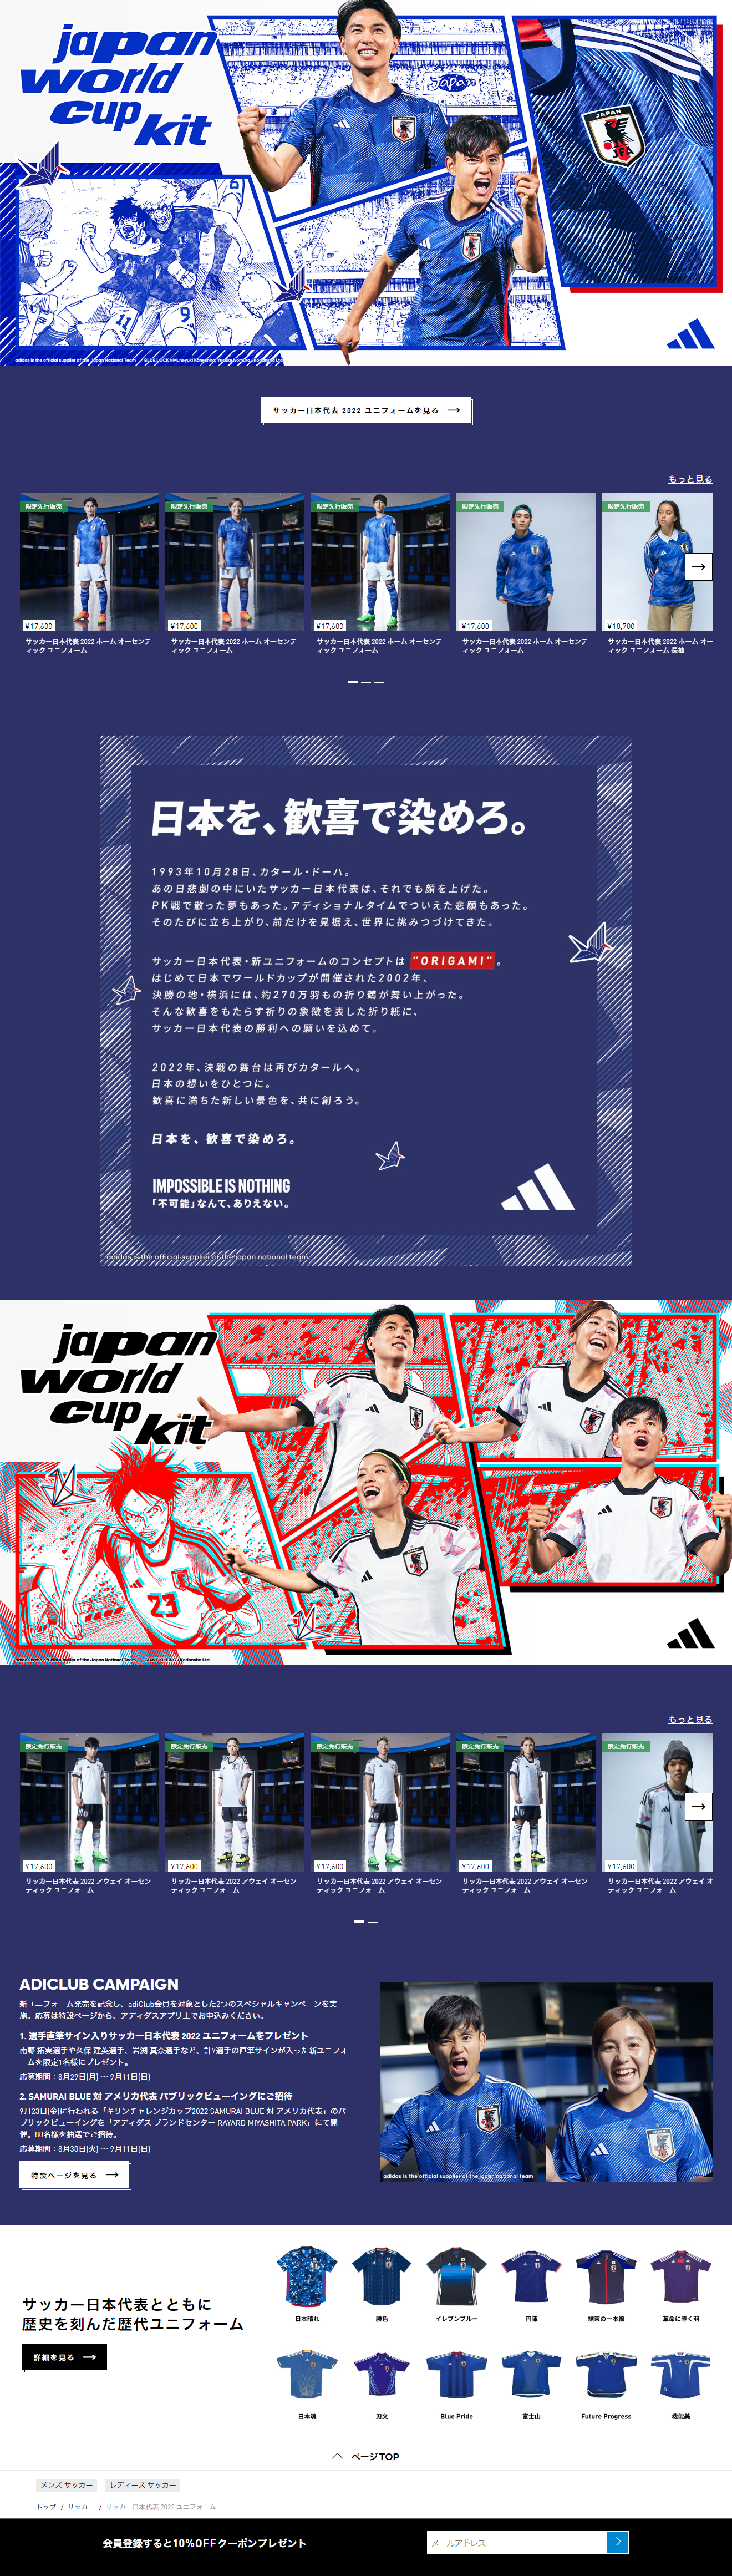 サッカー日本代表 2022 ユニフォーム_pc_1